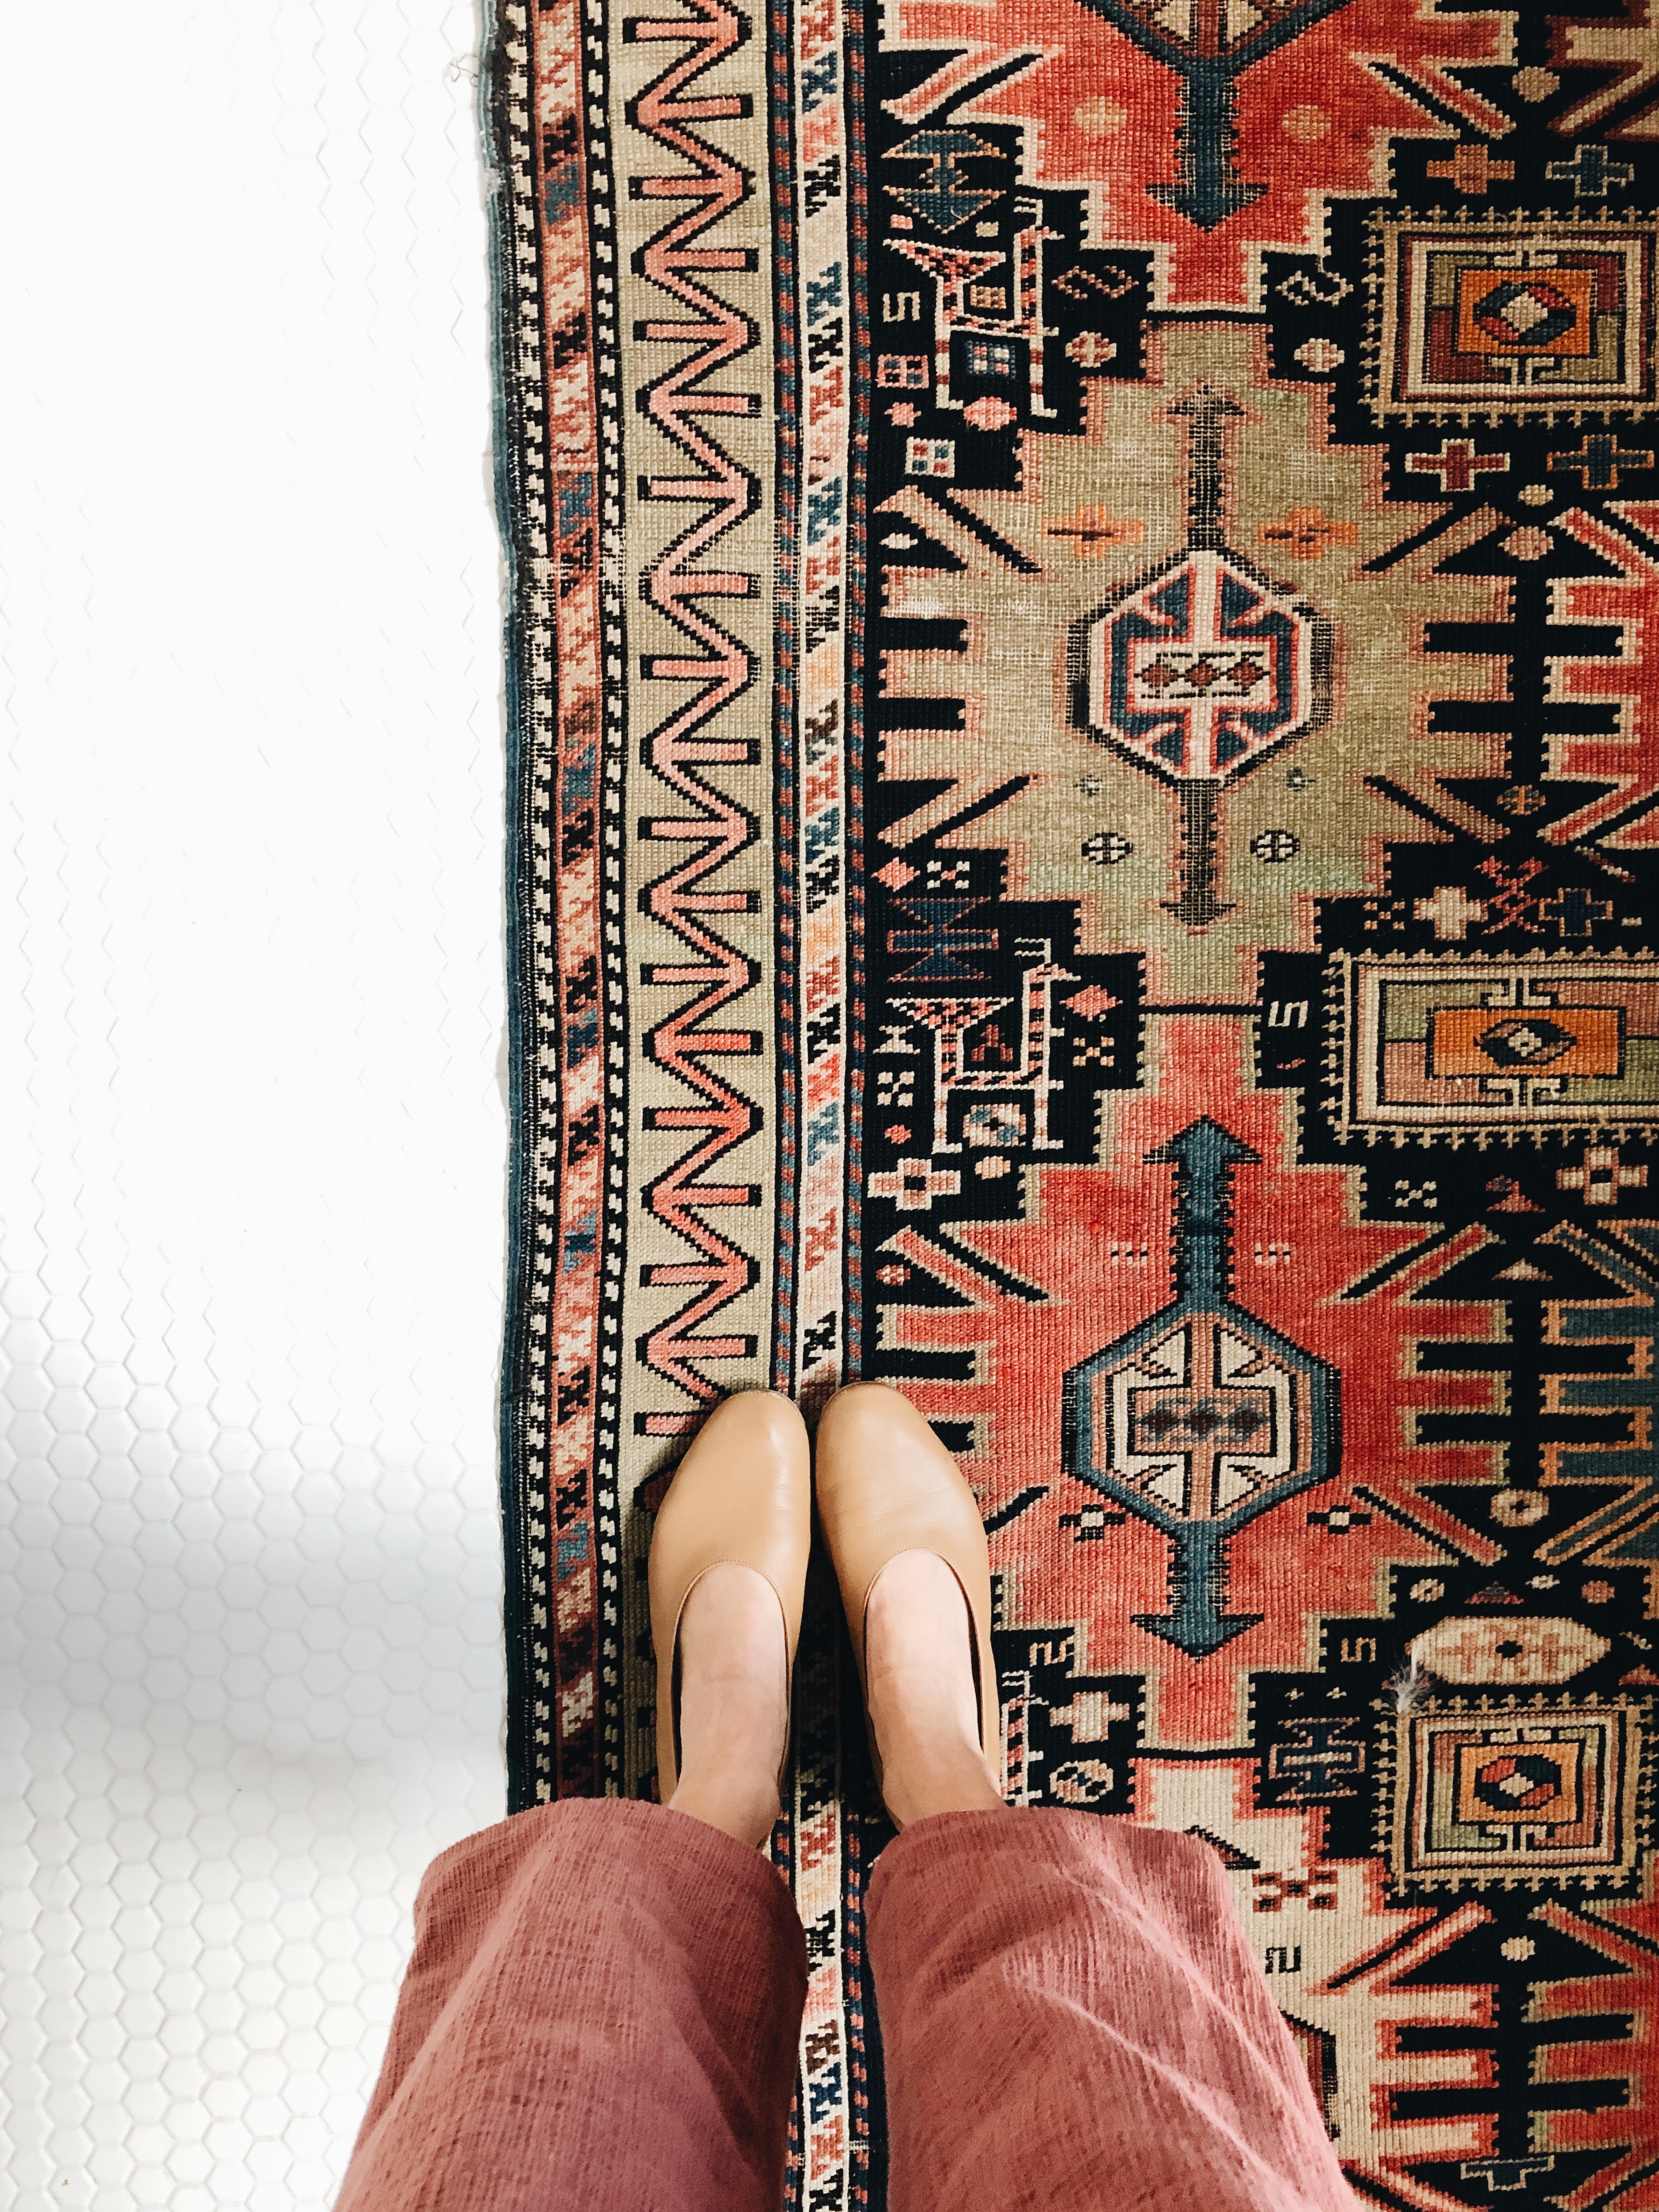 feet and rug